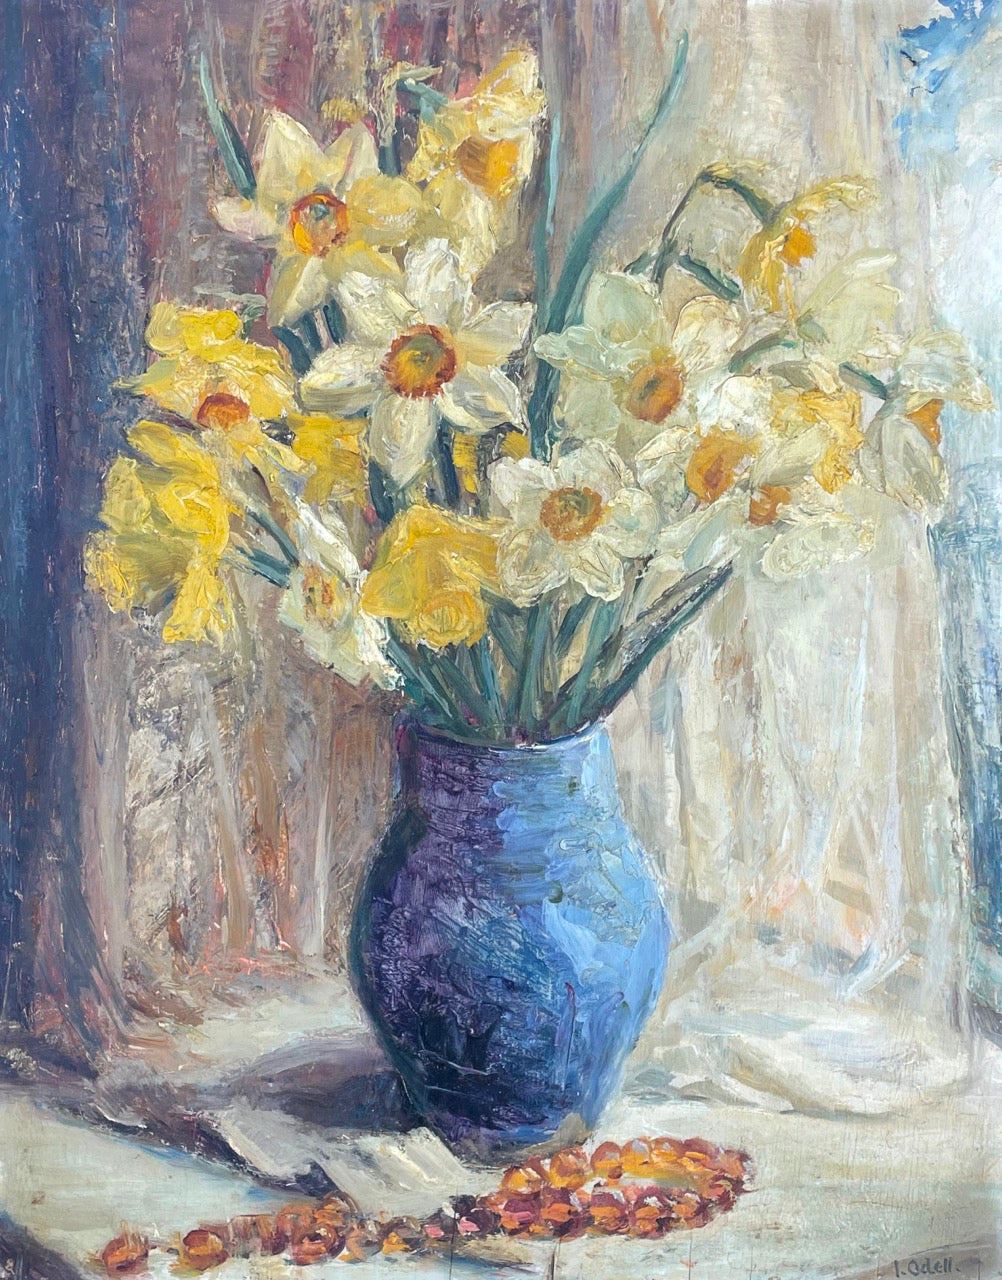 Isabel Odell (1871 -1943), The Blue Pot